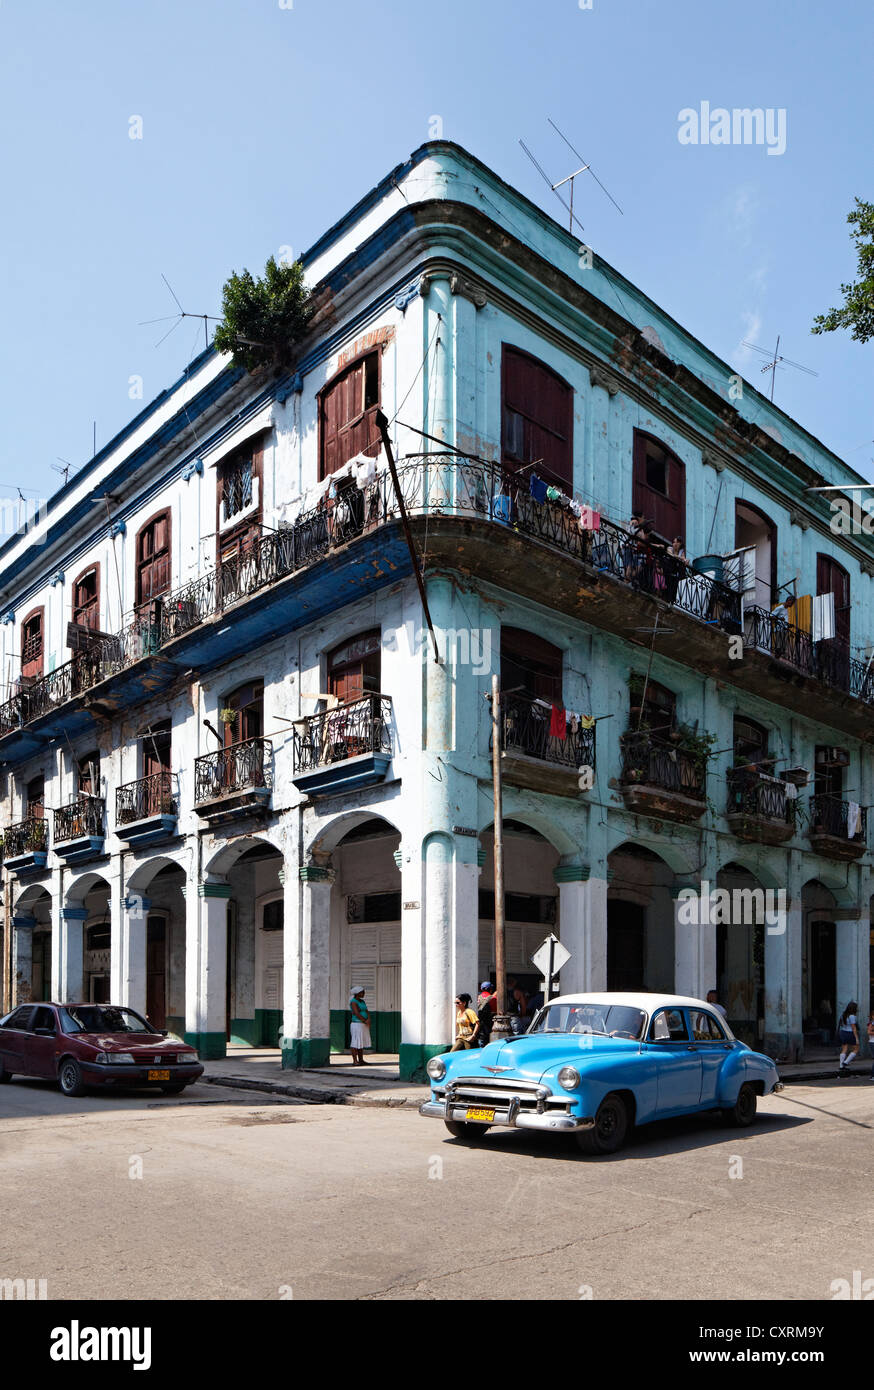 Fachada de un edificio ruinoso, con balcones, Villa de San Cristóbal de La Habana Vieja, La Habana, Ciudad de La Habana. Foto de stock